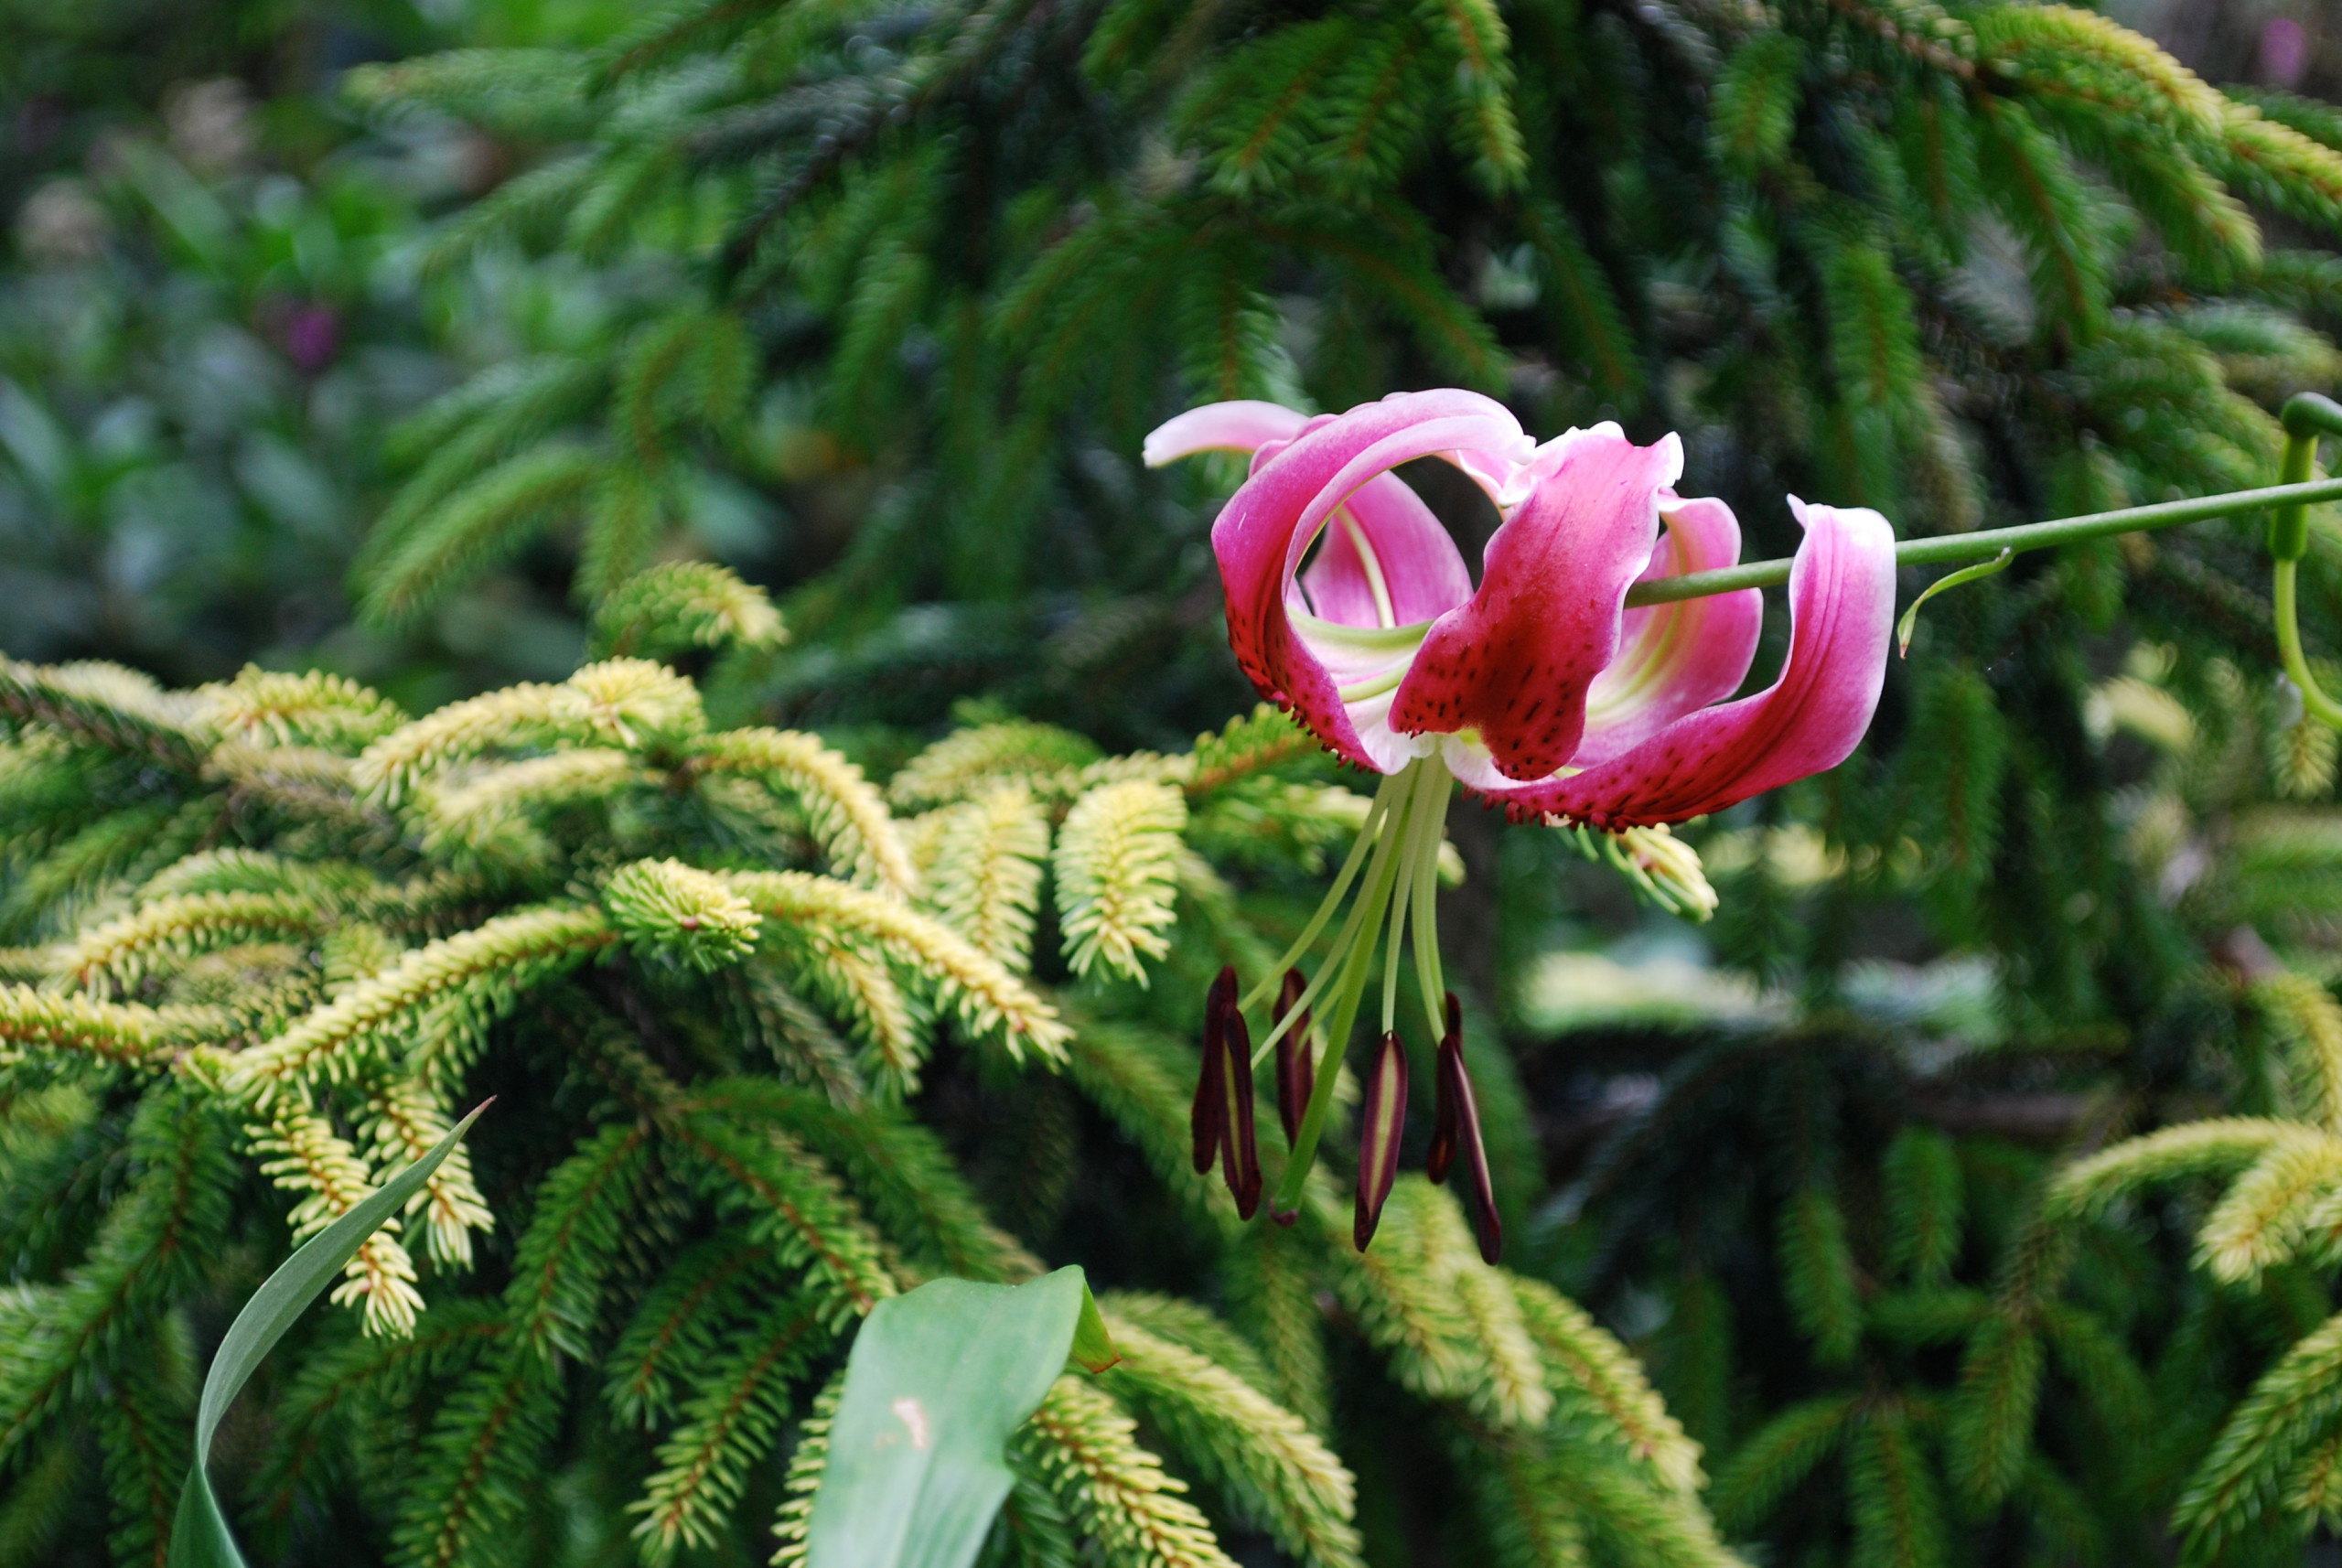 'Black Beauty' lily and 'Skylands' oriental spruce